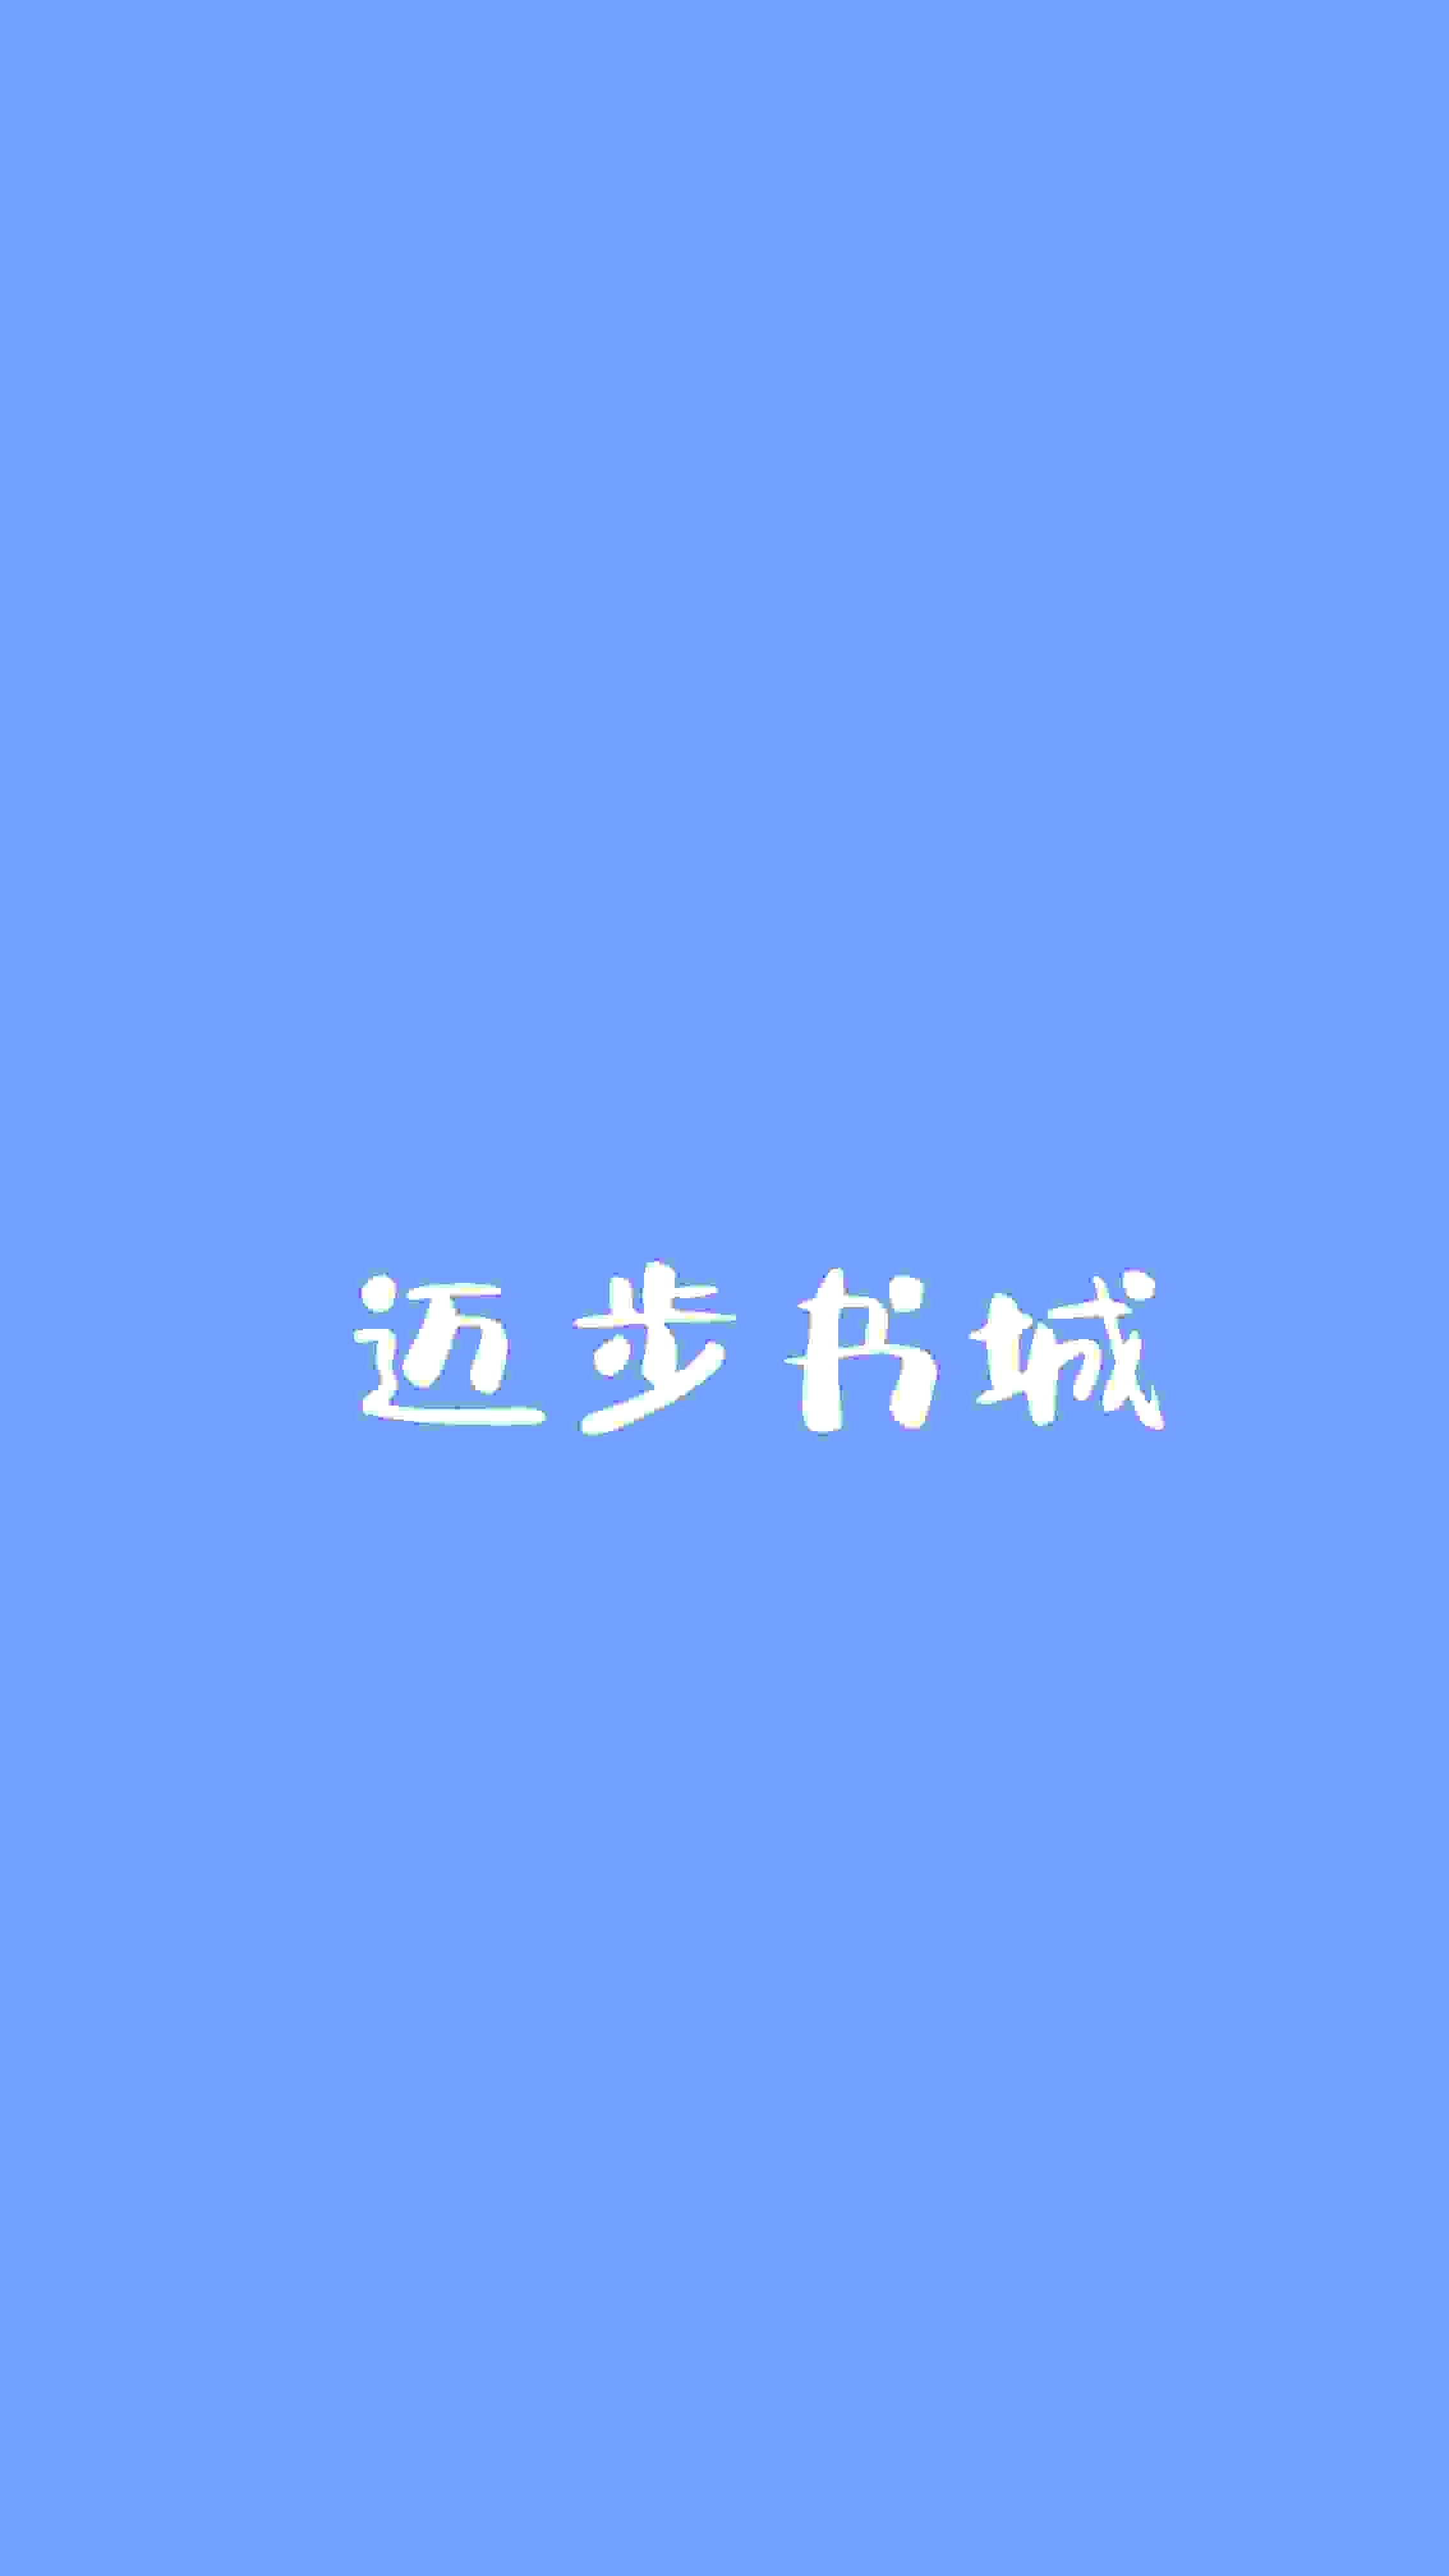 秦天明林婉小说《鸿运天途》最新章节已更新